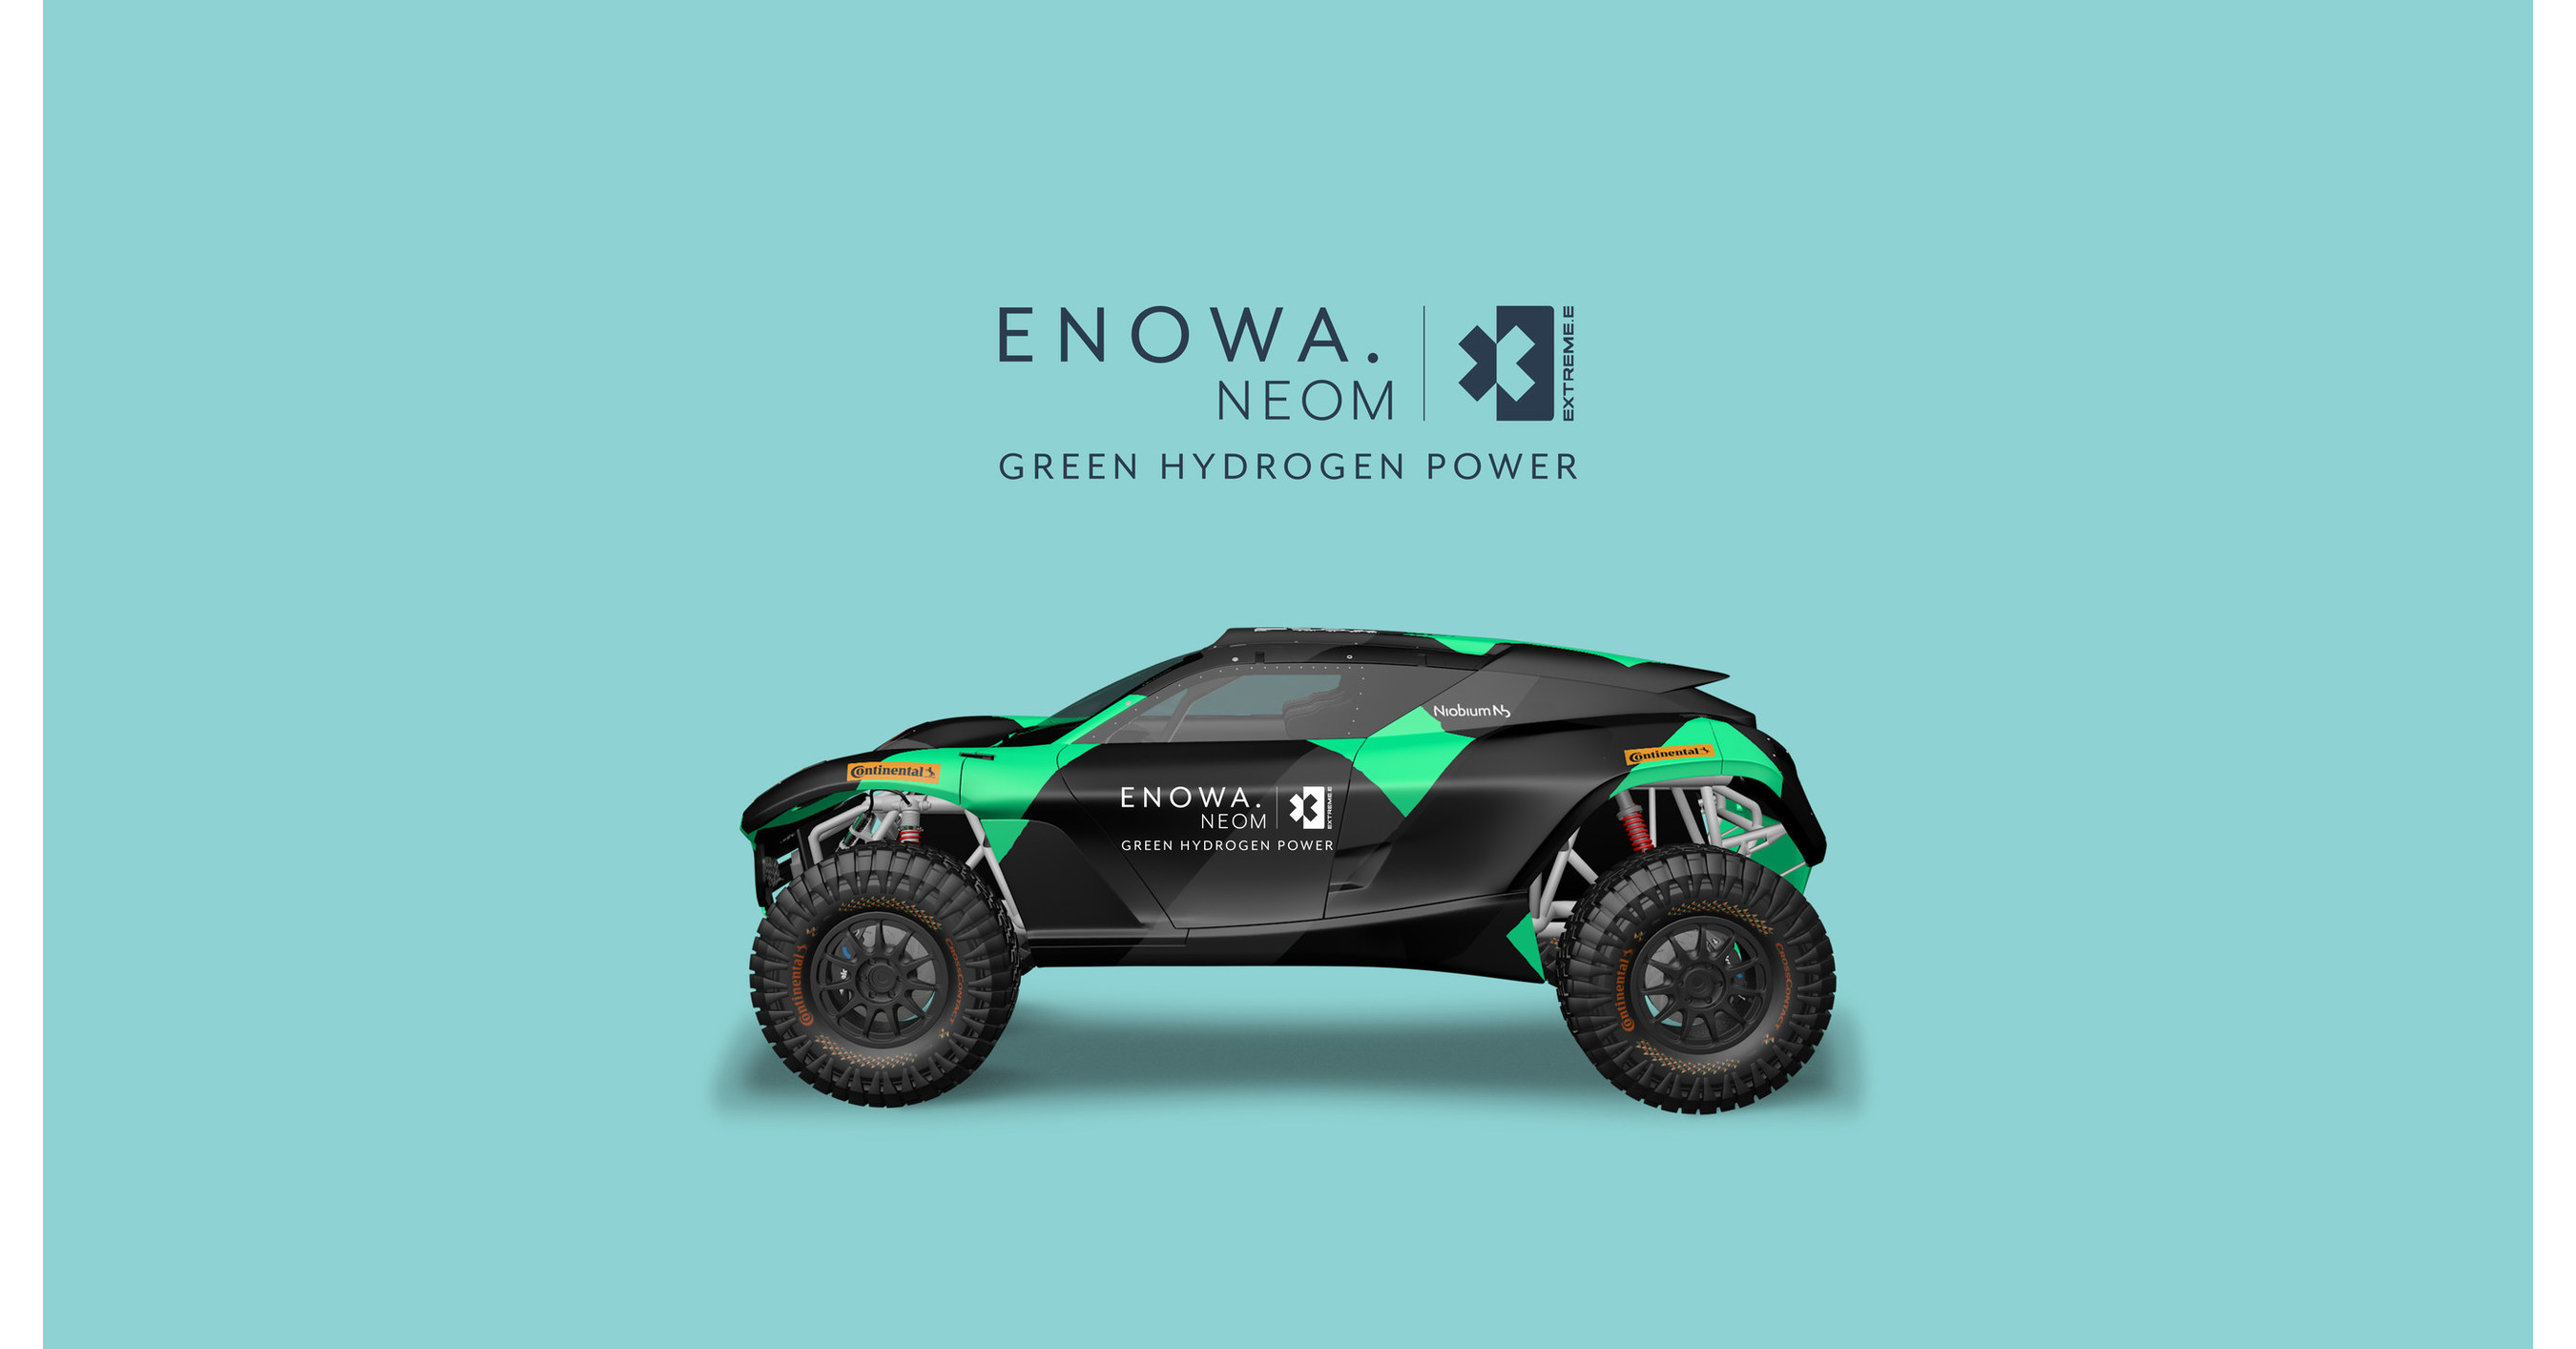 ENOWA de NEOM para impulsar la energía electrónica masiva utilizando energía de hidrógeno verde